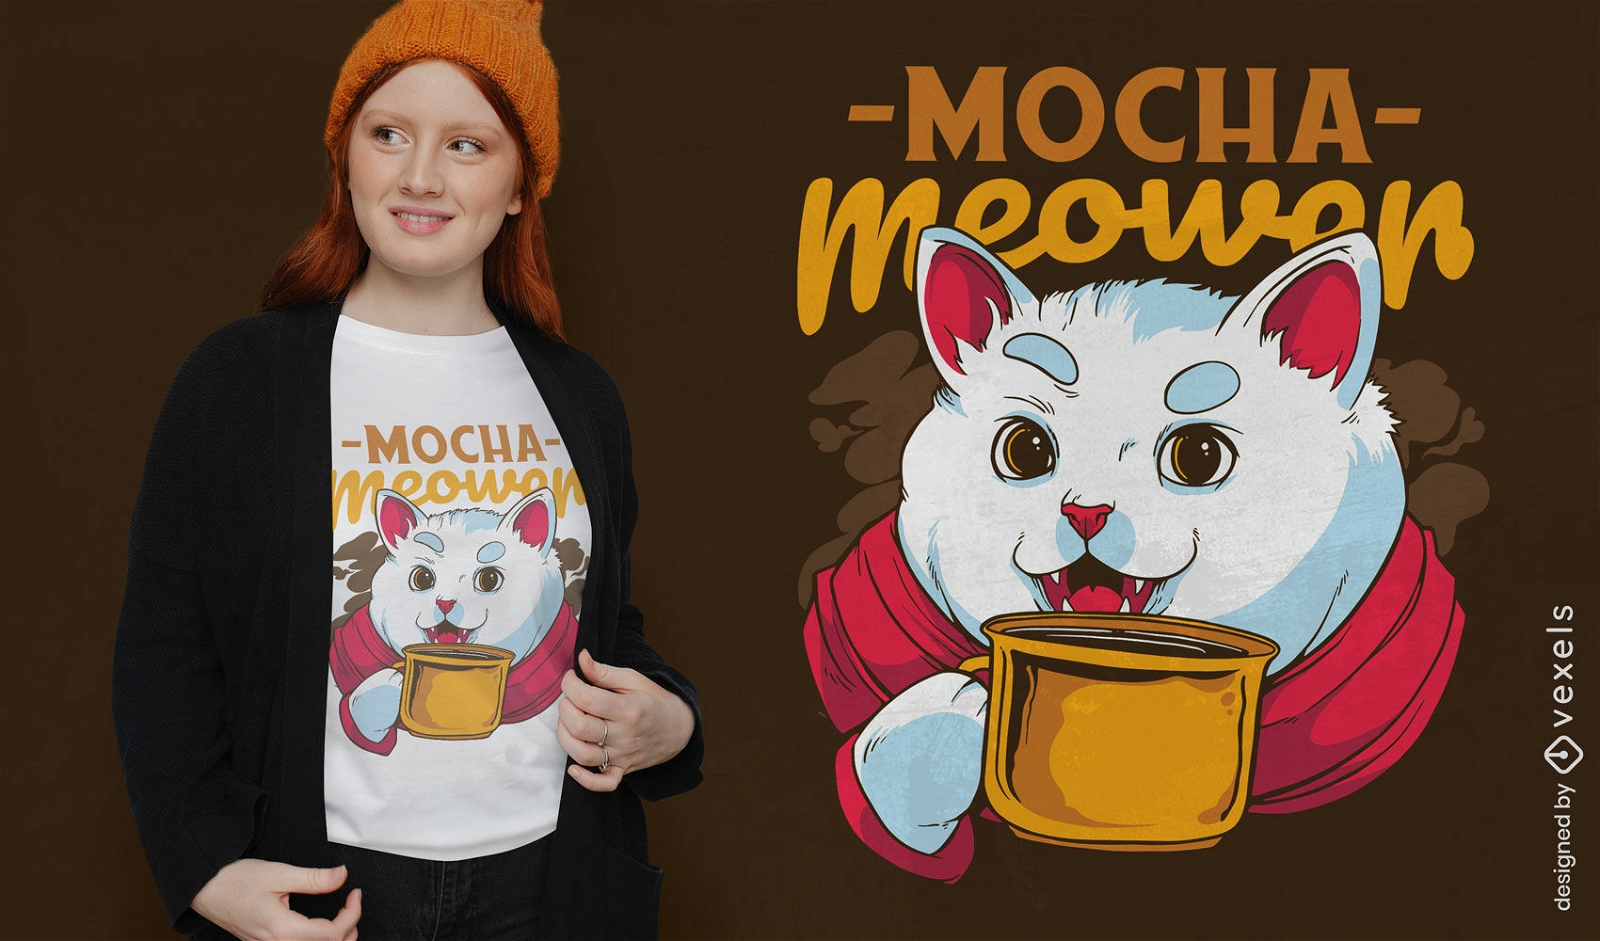 Mocha coffee cat t-shirt design